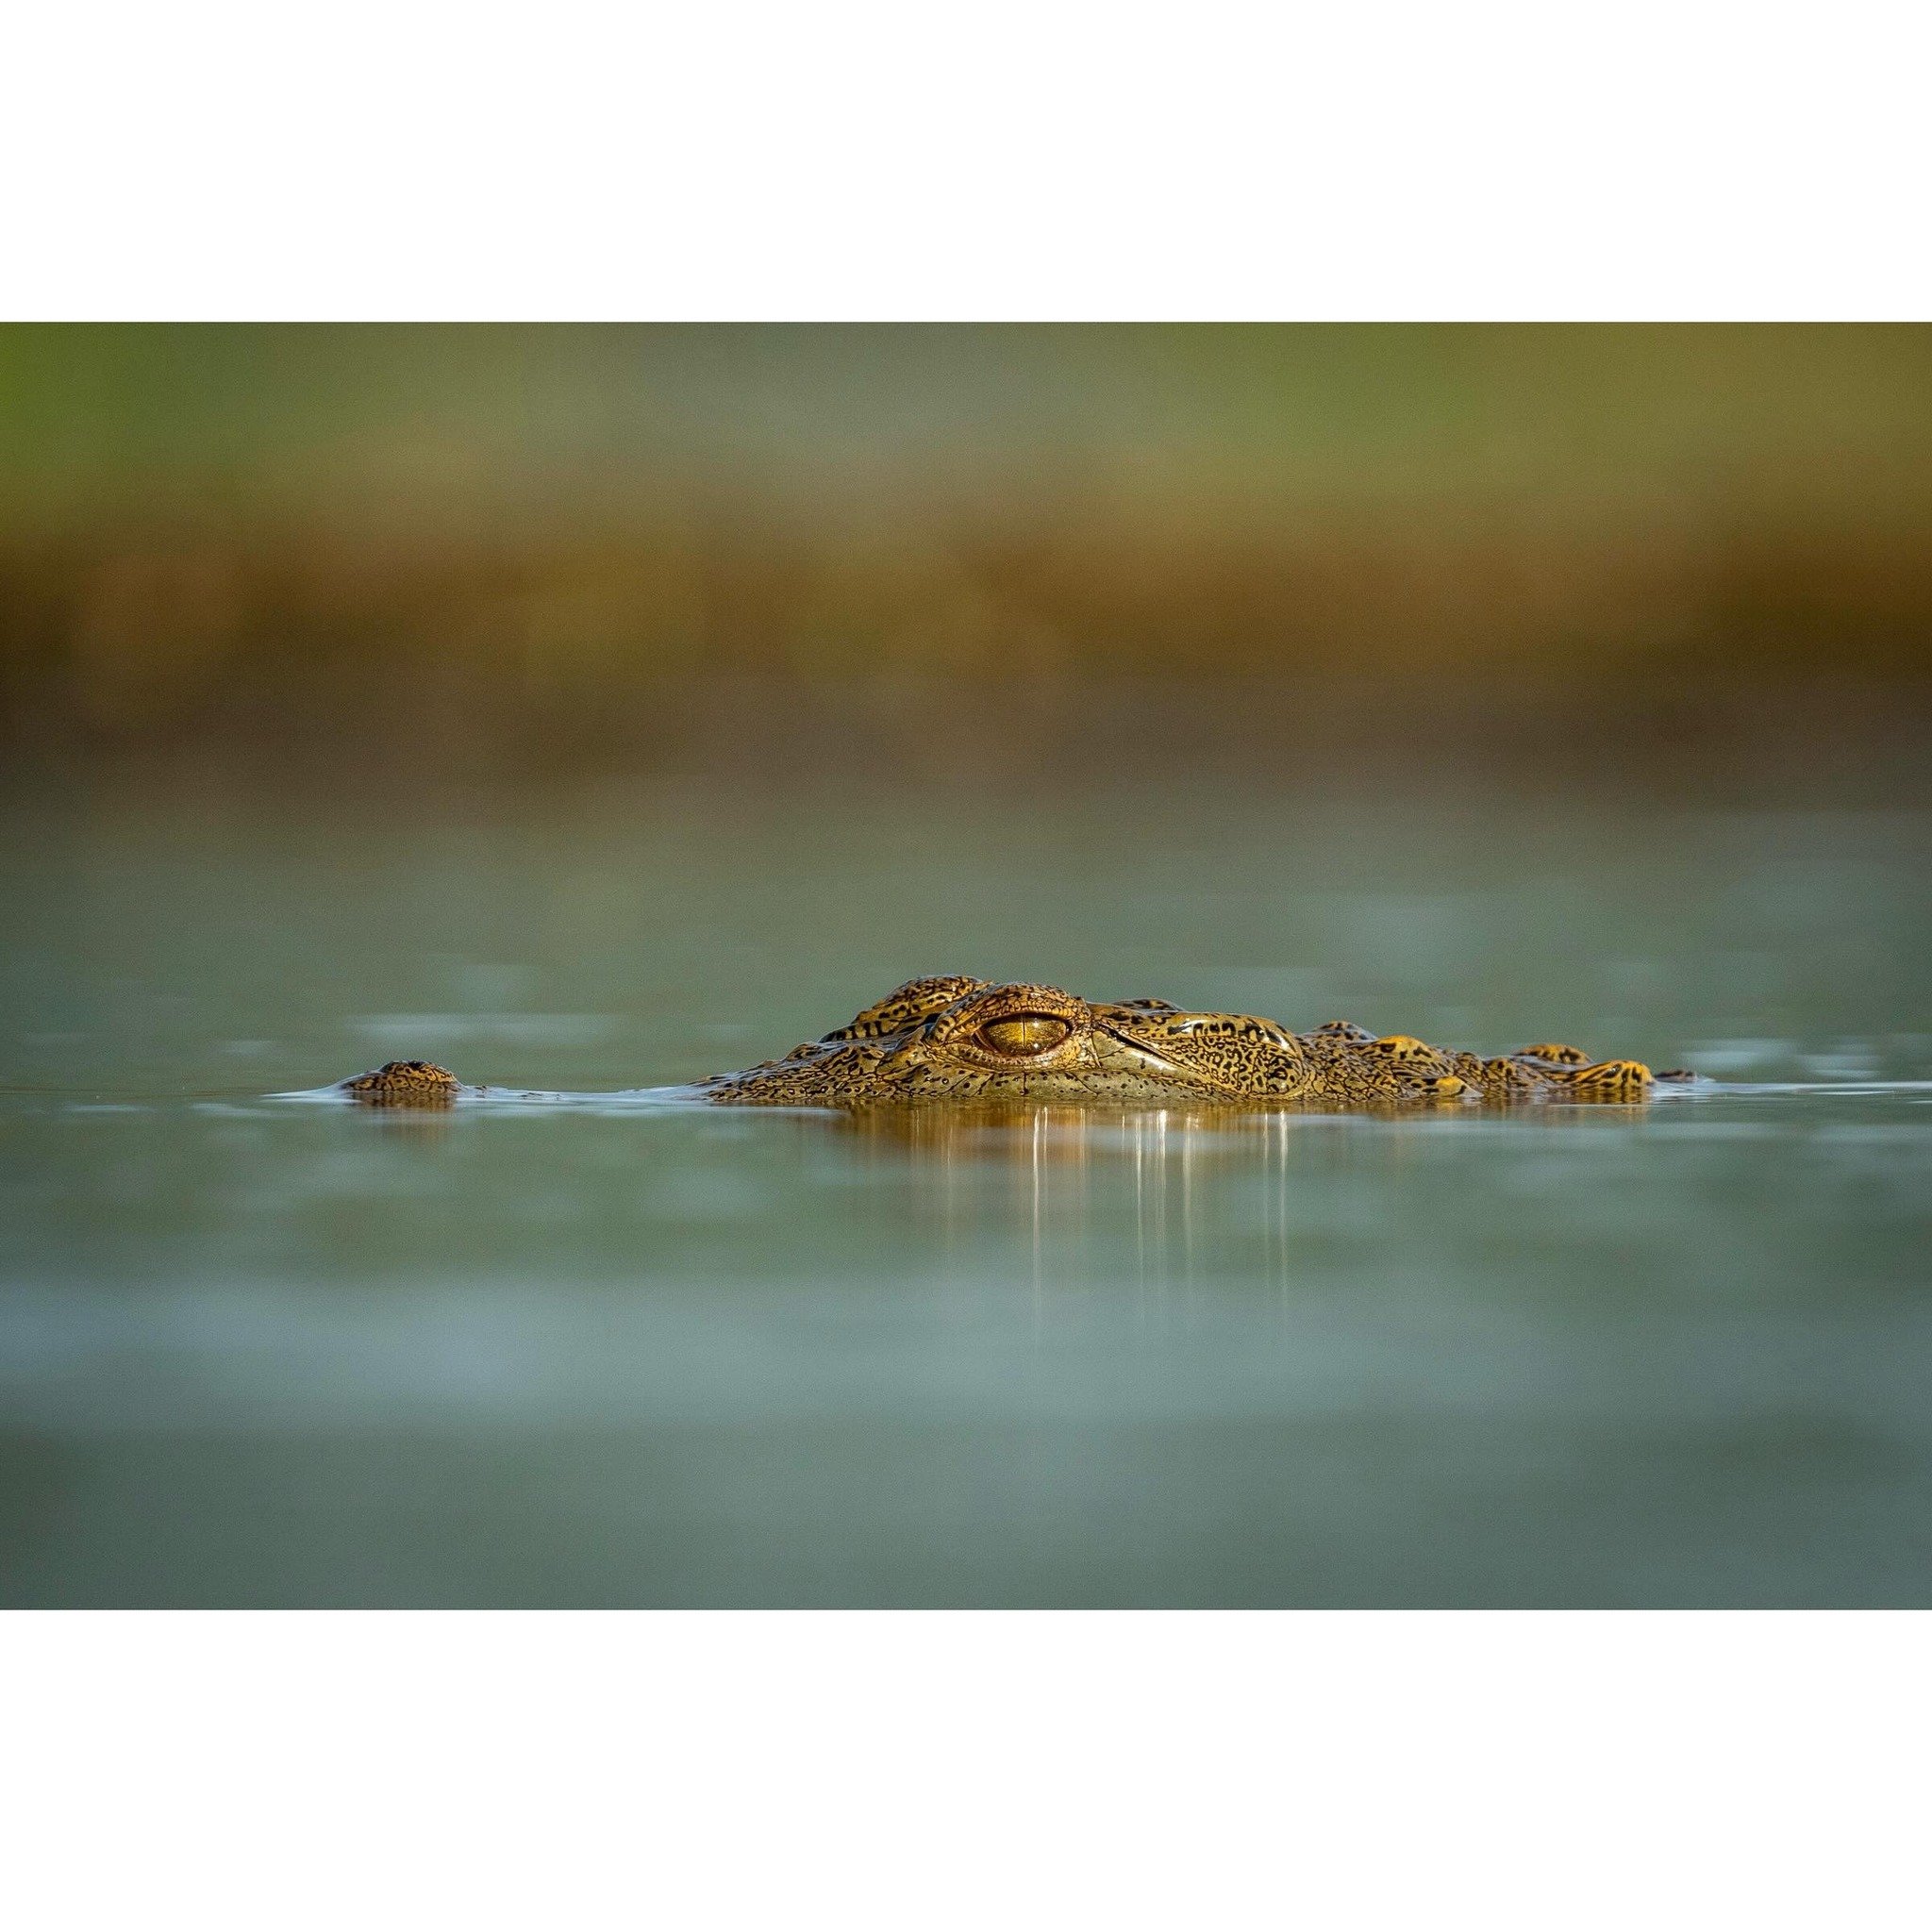 Lurking.

#crocodile #africawildlife #wildlife #wildlifephotography @sonyalphafemale